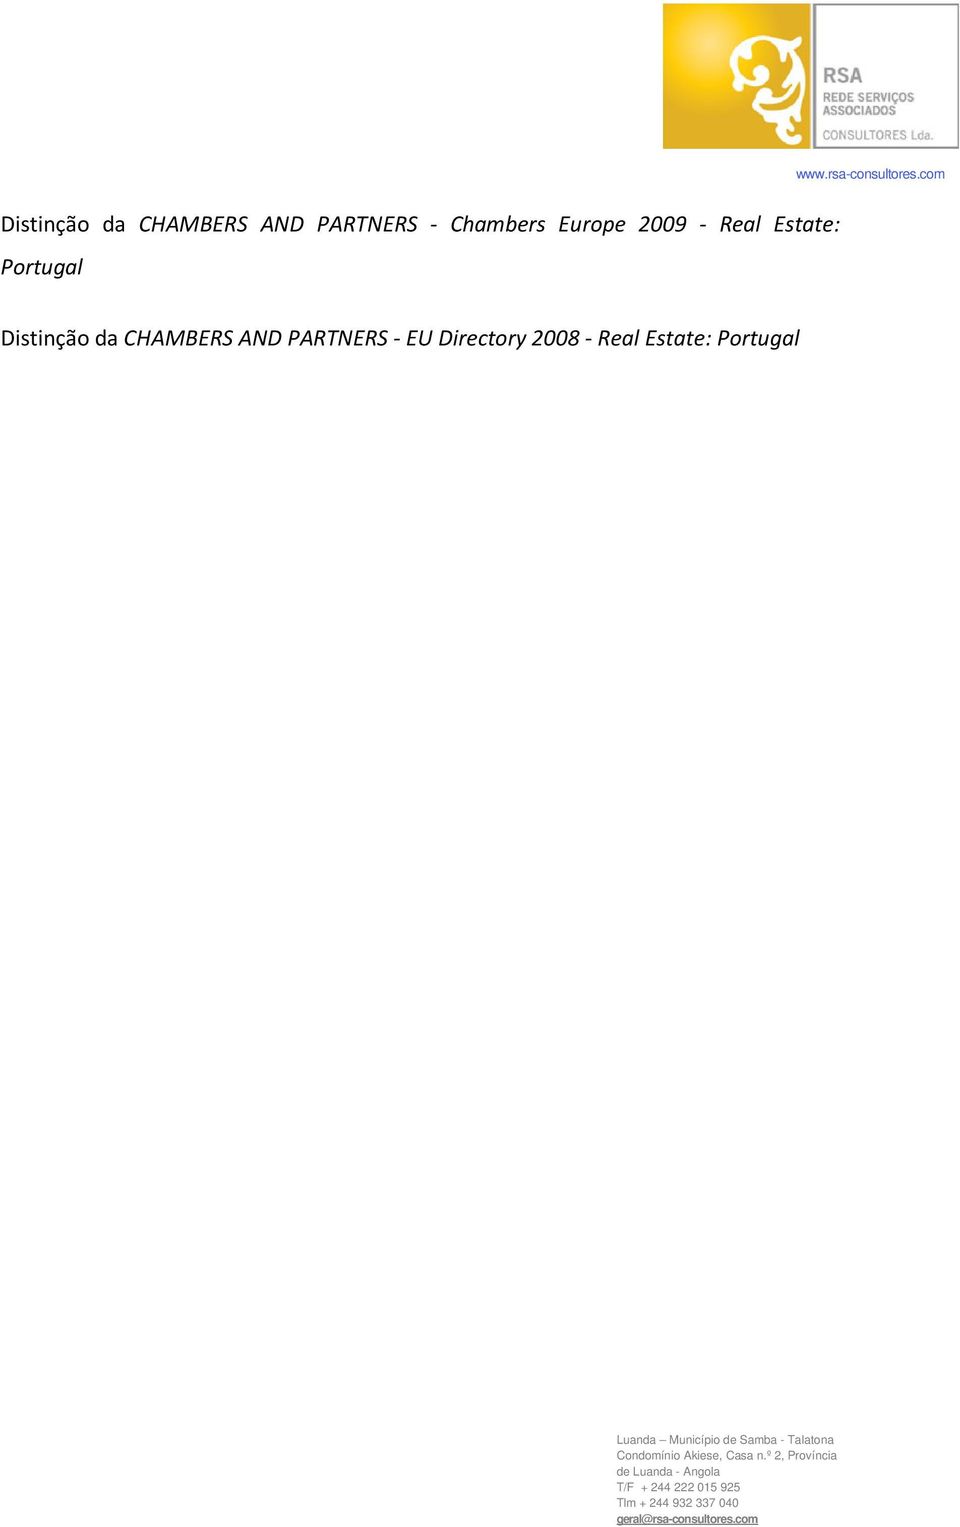 Portugal  EU Directory 2008 - Real